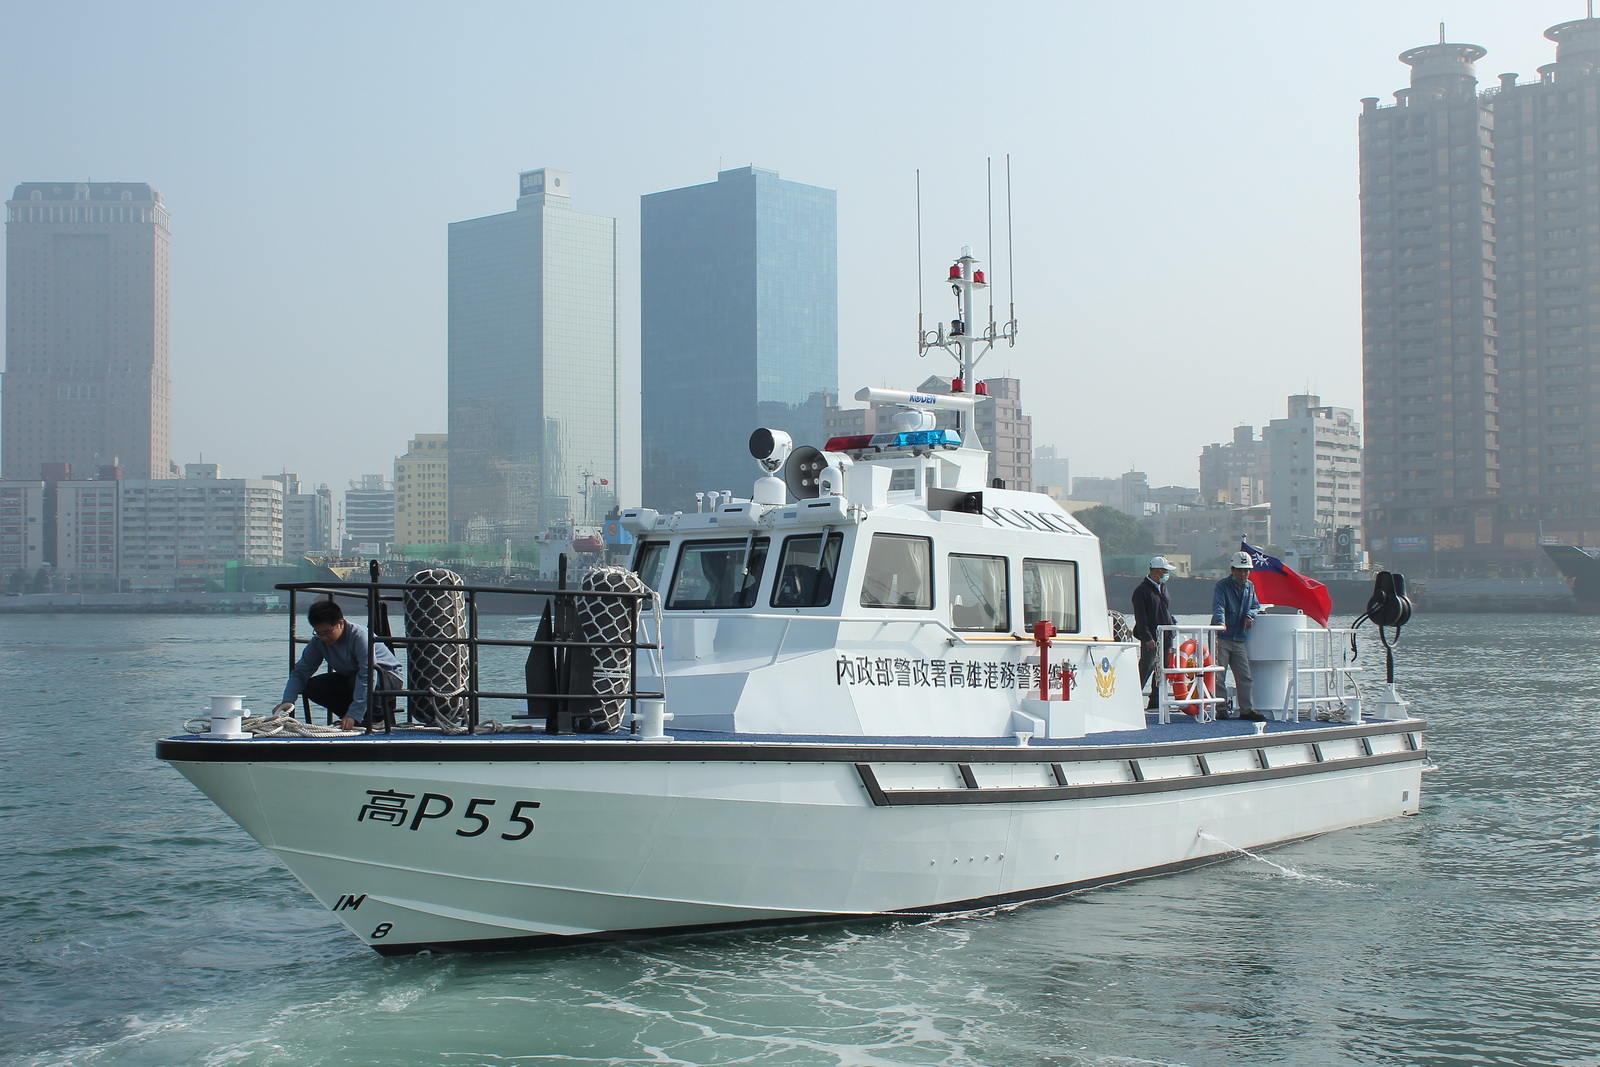 19GT aluminum alloy high-speed patrol boat